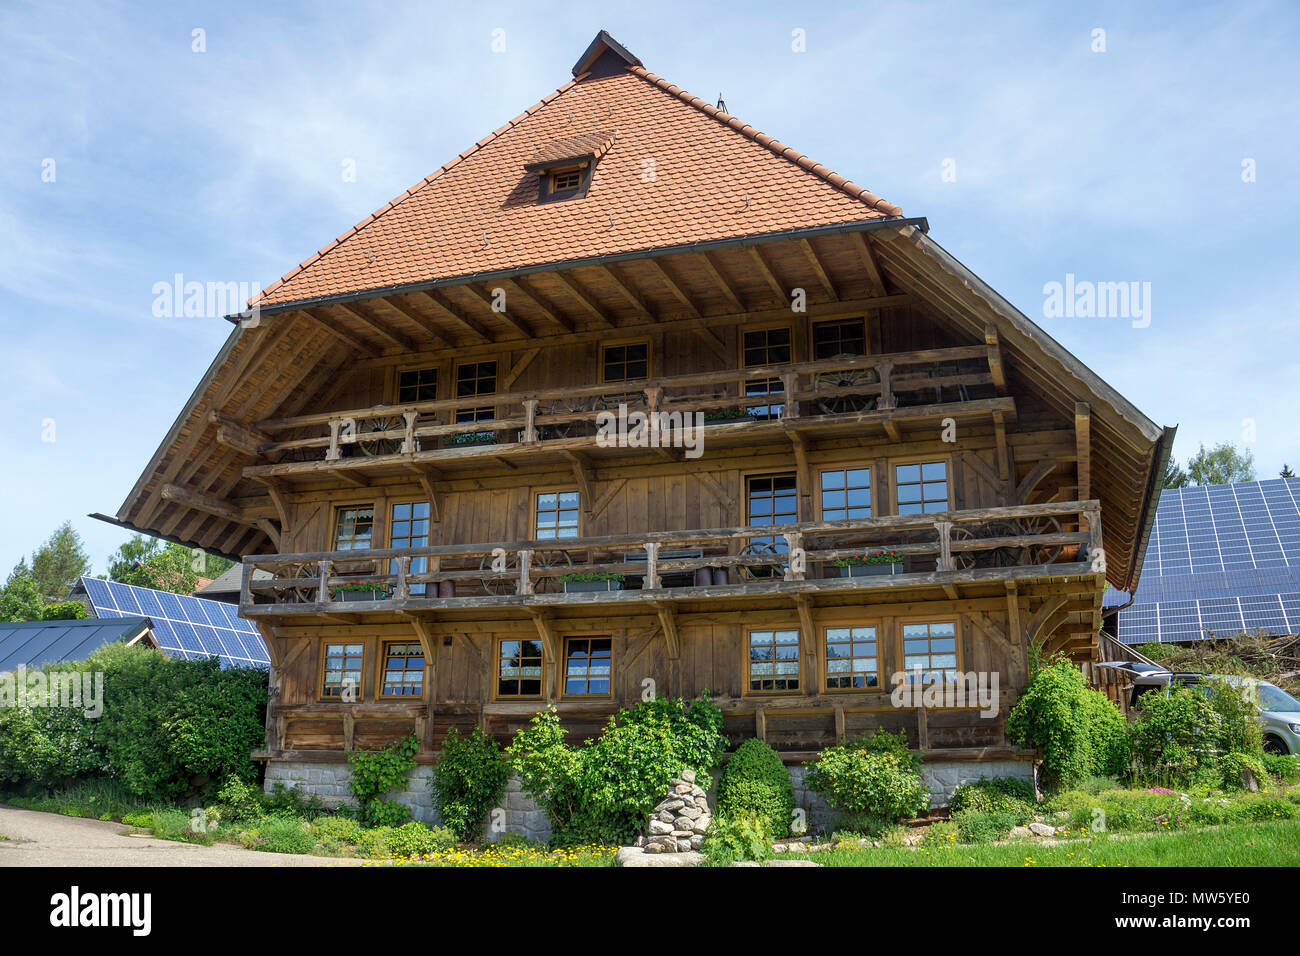 Maison de la Forêt Noire en bois typique village à Schonach, Forêt-Noire, Bade-Wurtemberg, Allemagne, Europe Banque D'Images